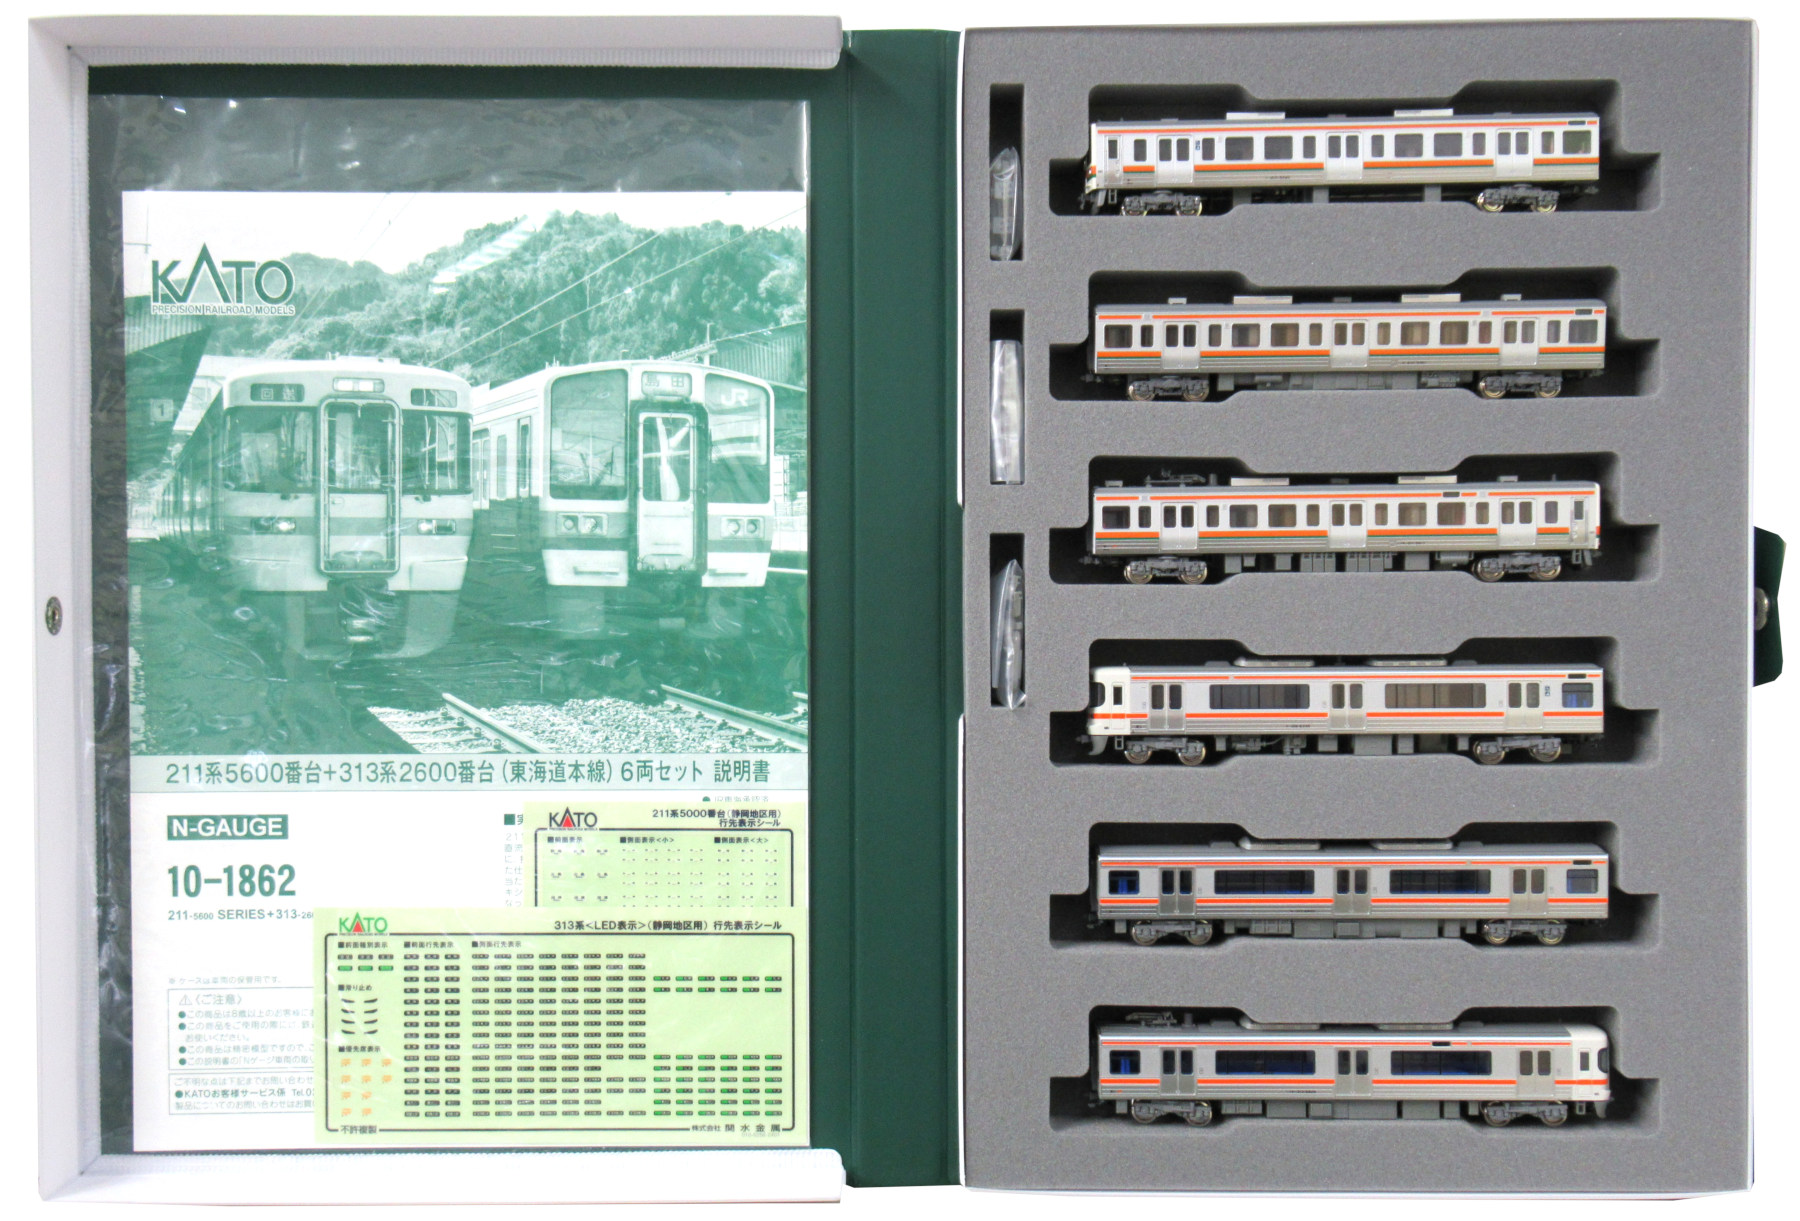 公式]鉄道模型(JR・国鉄 形式別(N)、近郊形車両、211系)カテゴリ 